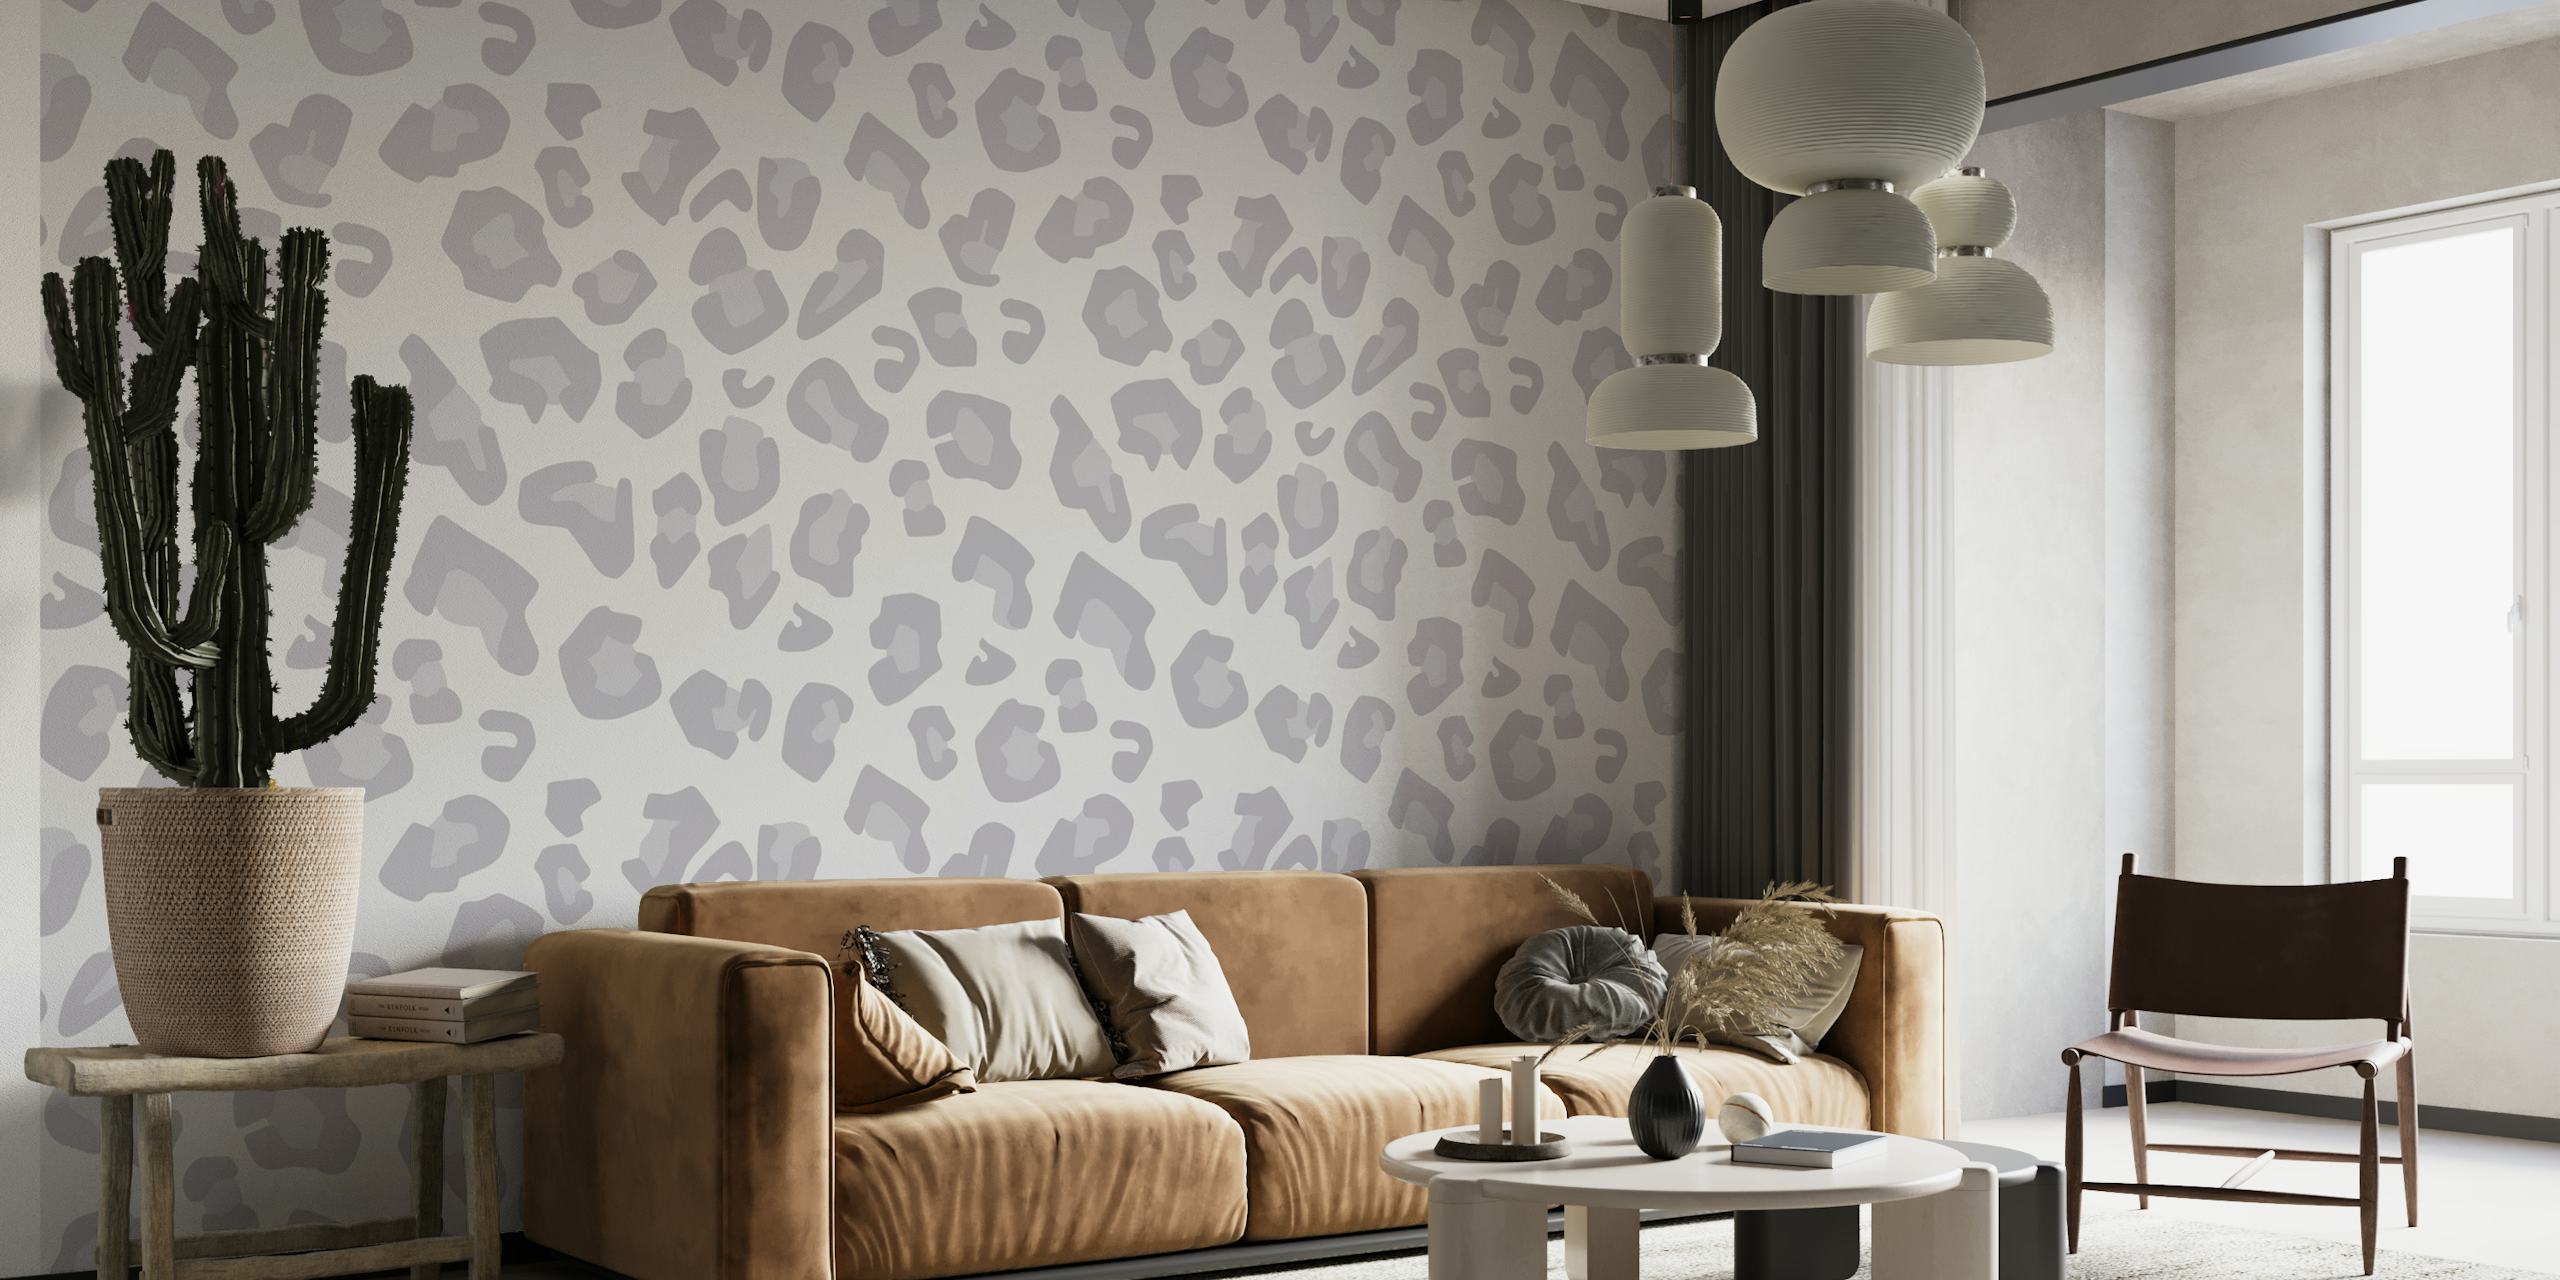 Moderno mural de pared con estampado de leopardo en gris pálido con un diseño sutil y sofisticado